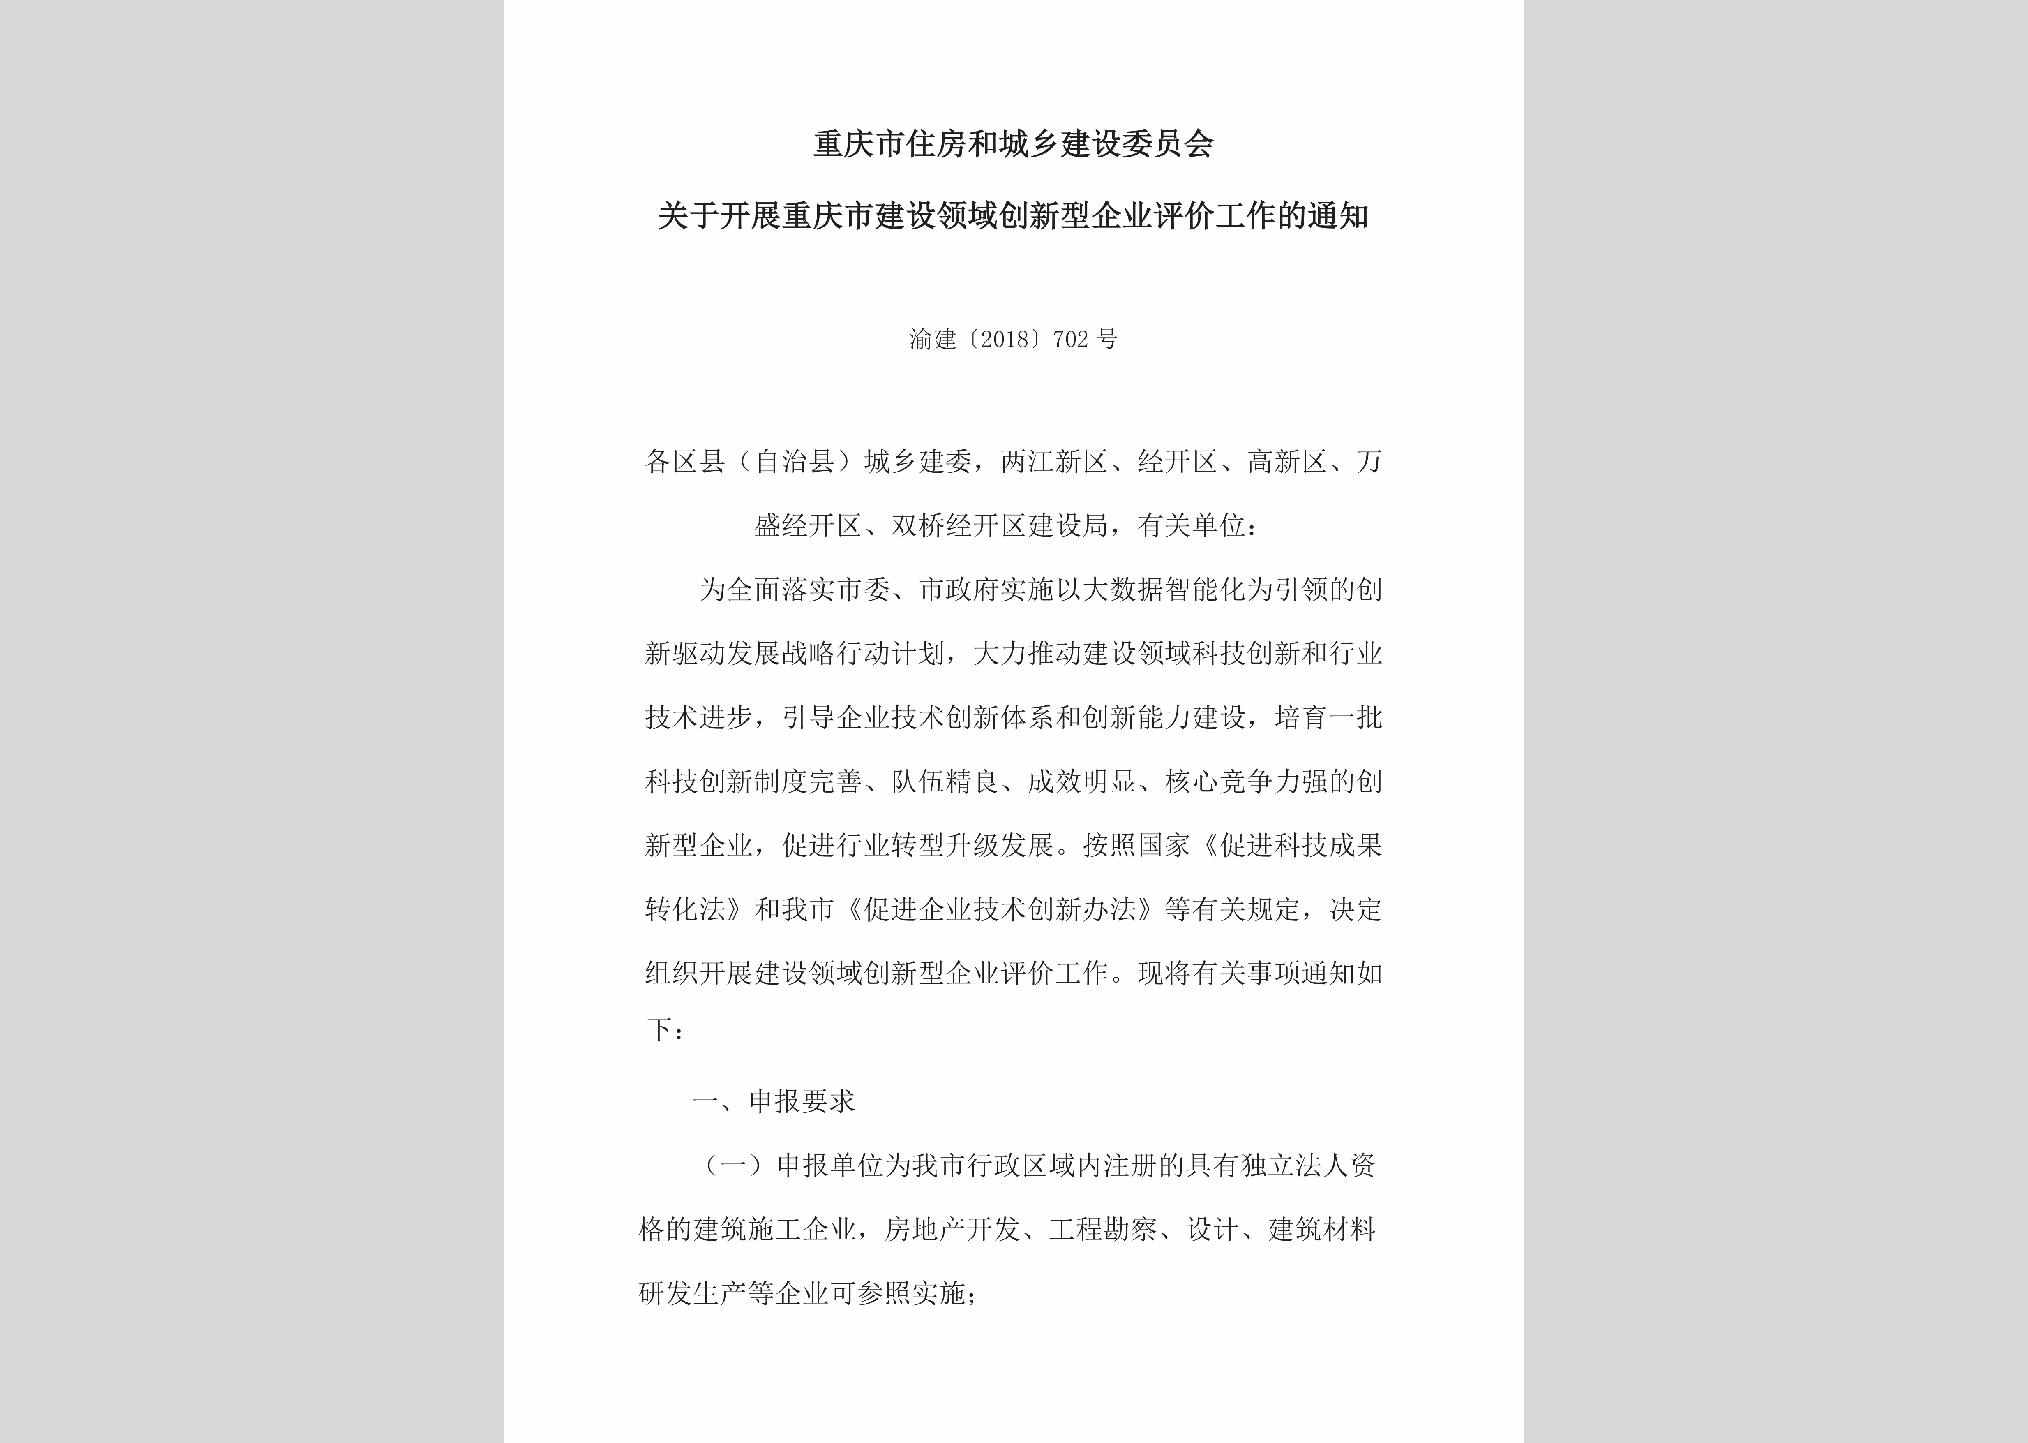 渝建[2018]702号：关于开展重庆市建设领域创新型企业评价工作的通知